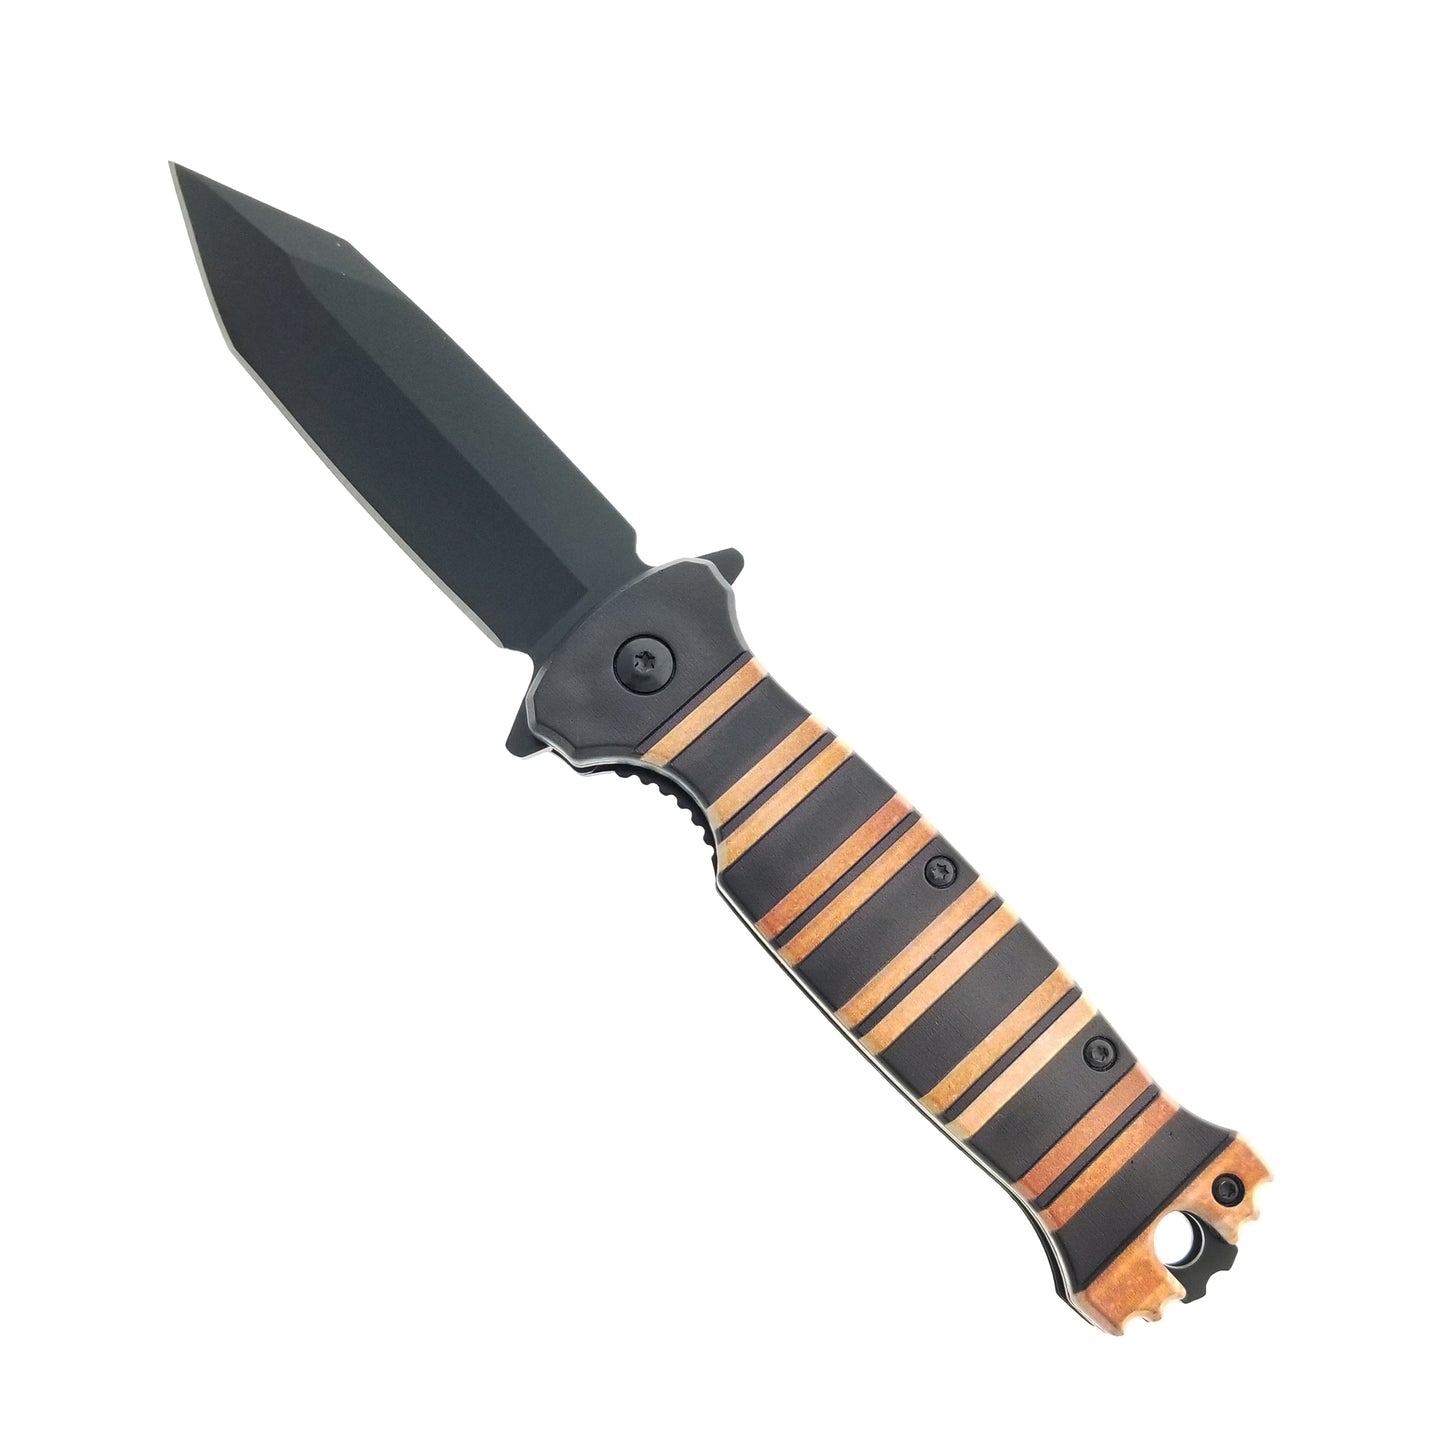 8" Orange and Black Handle Spring Assisted Pocket Knife w/ Belt Clip